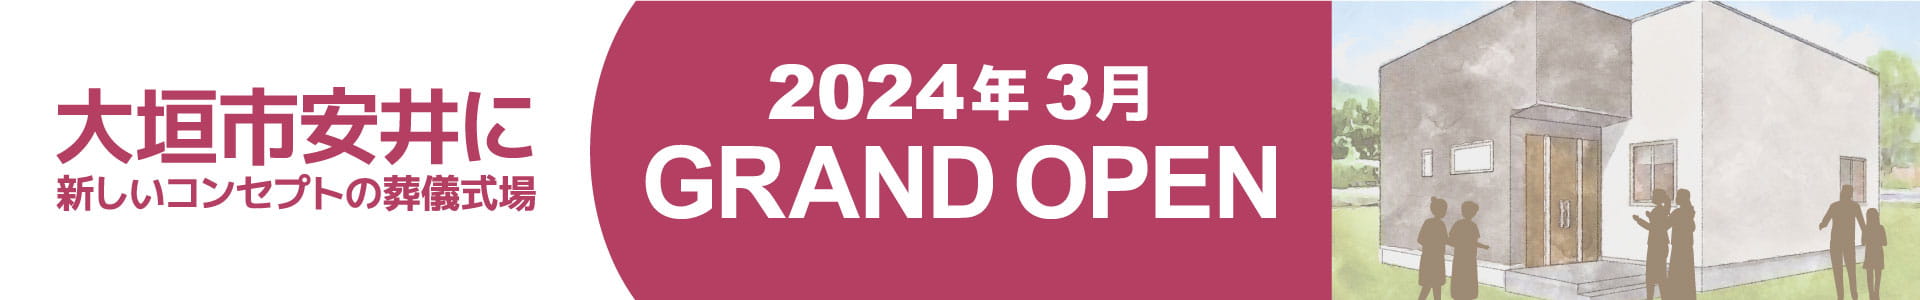 岐阜県大垣市安井に新しいコンセプトの葬儀式場 2024年 3月 GRAND OPEN